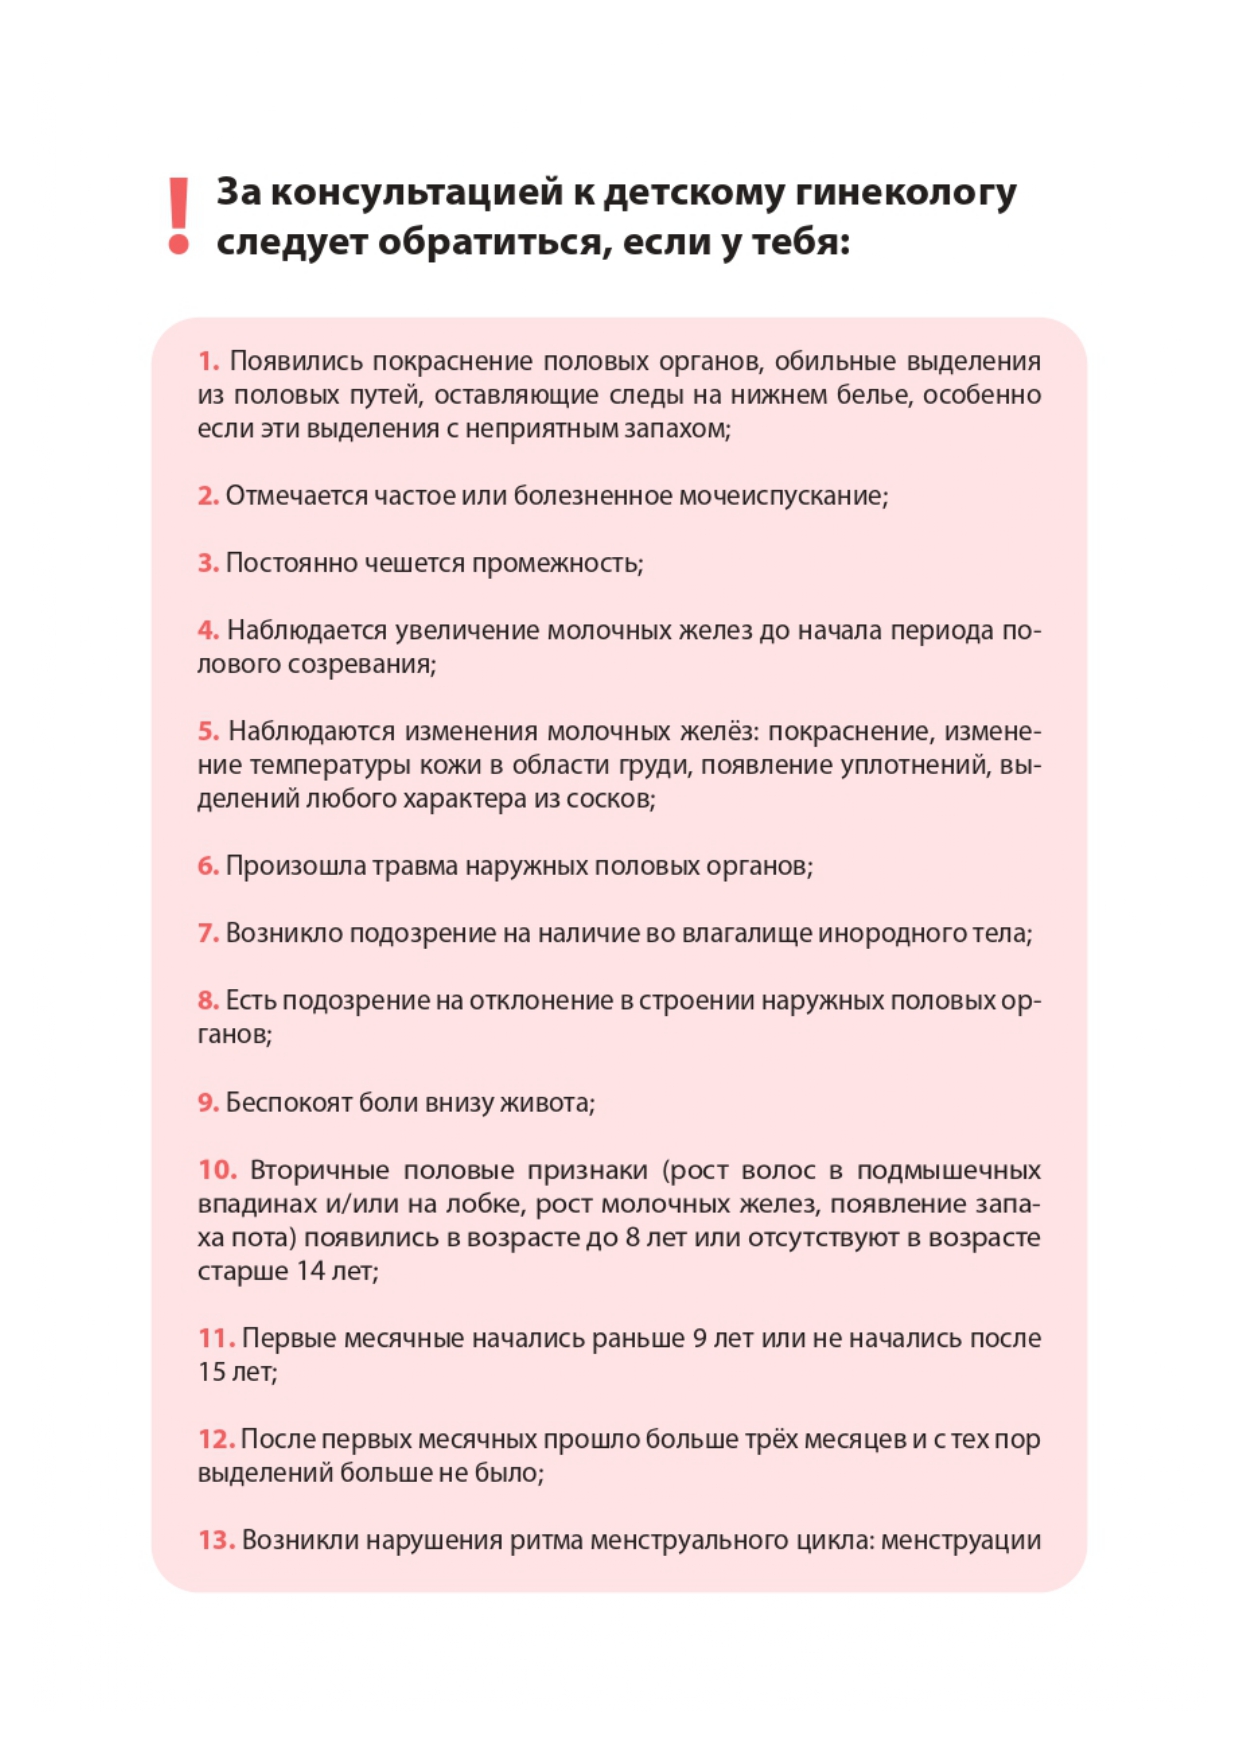 reproduktivnoe-zdorove-devochkam page-0019